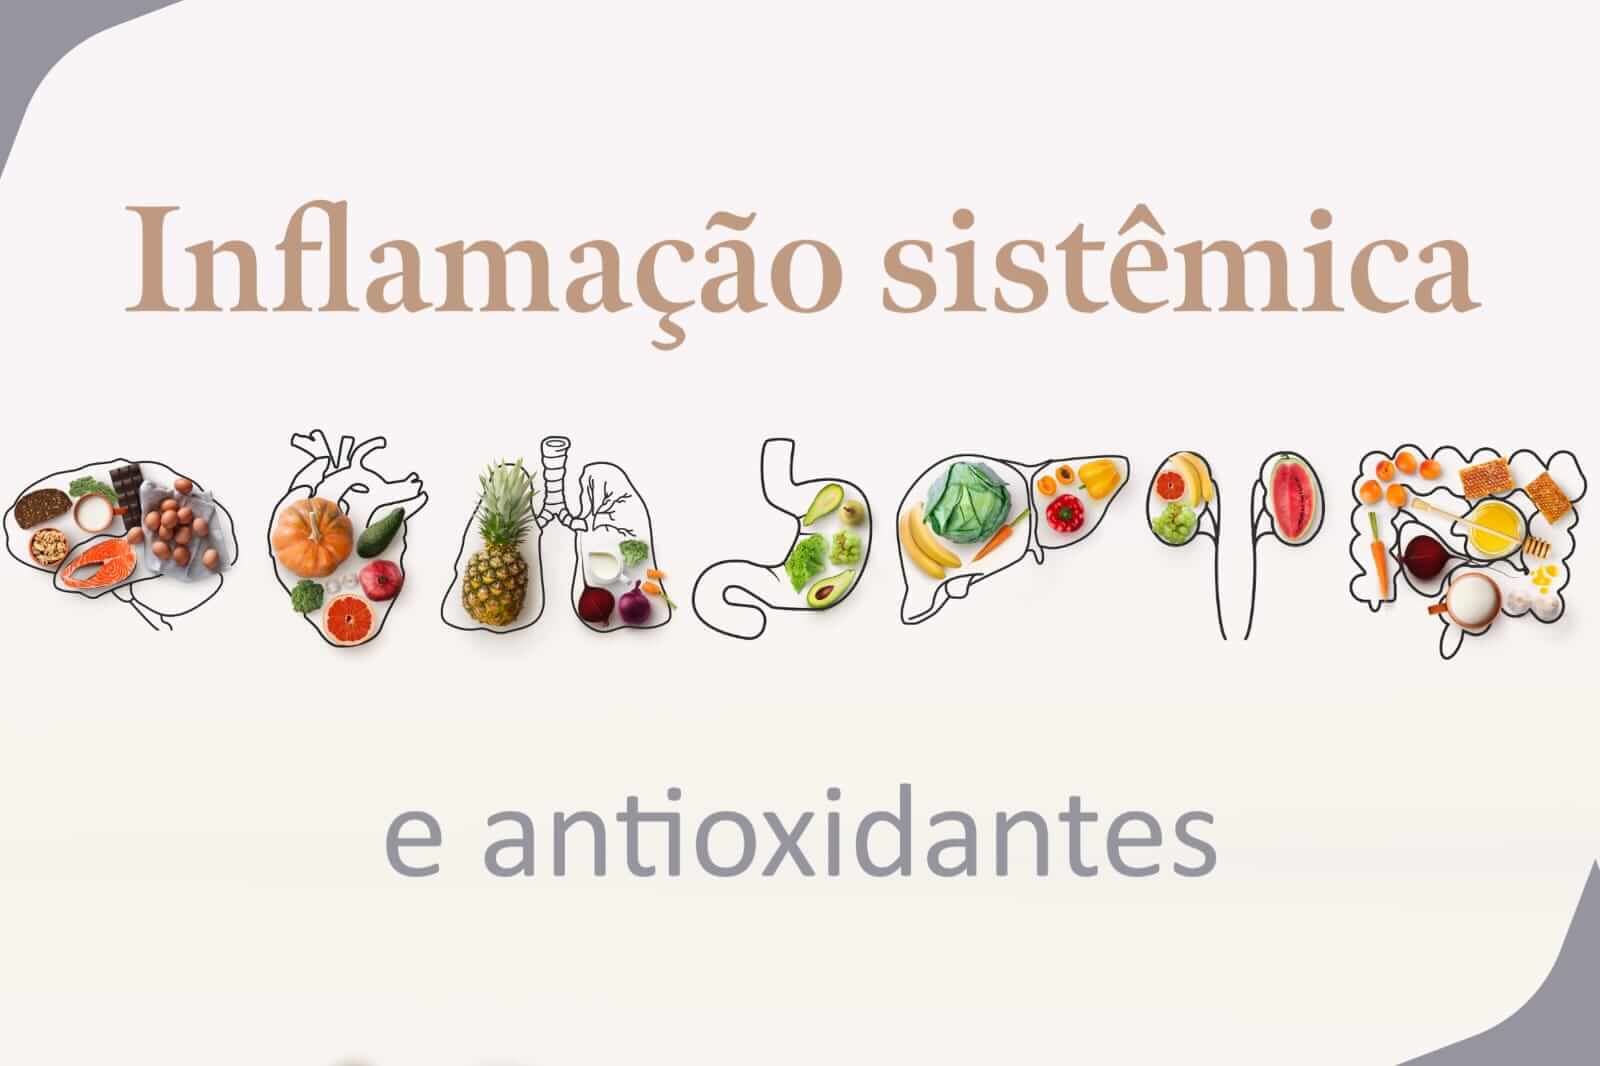 Inflamação sistêmica e antioxidantes